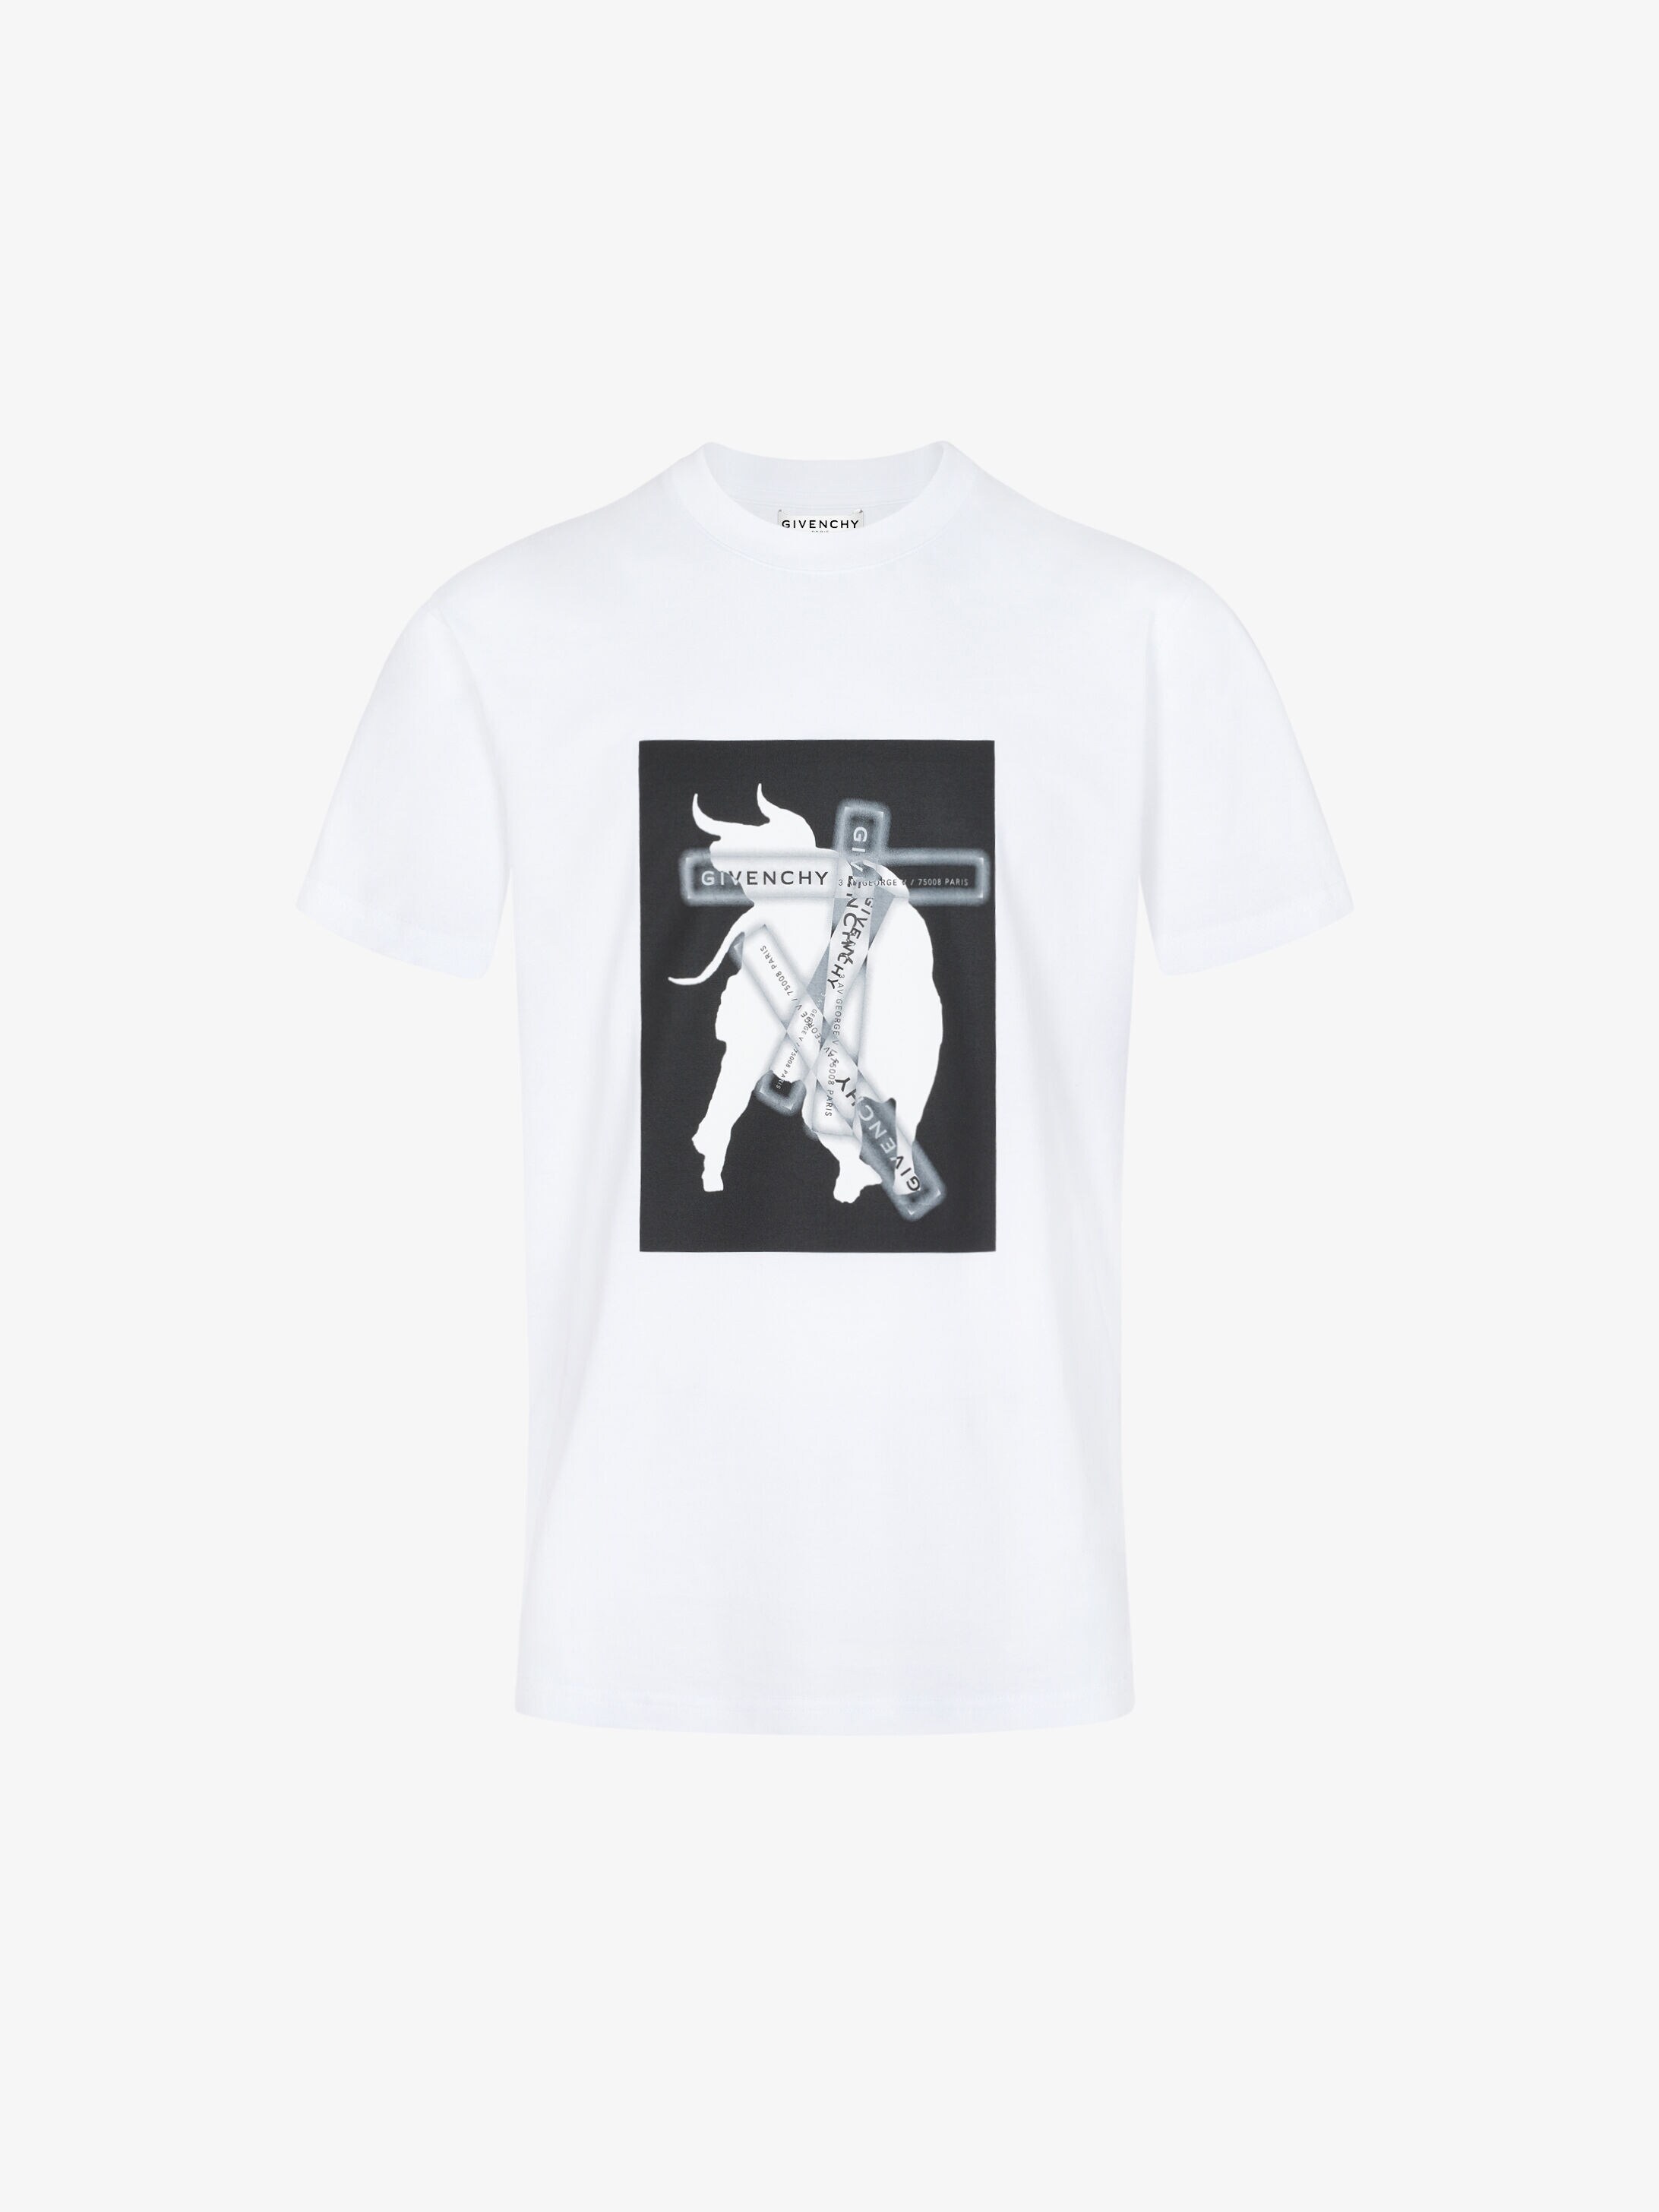 GIVENCHY Bull T-shirt | GIVENCHY Paris